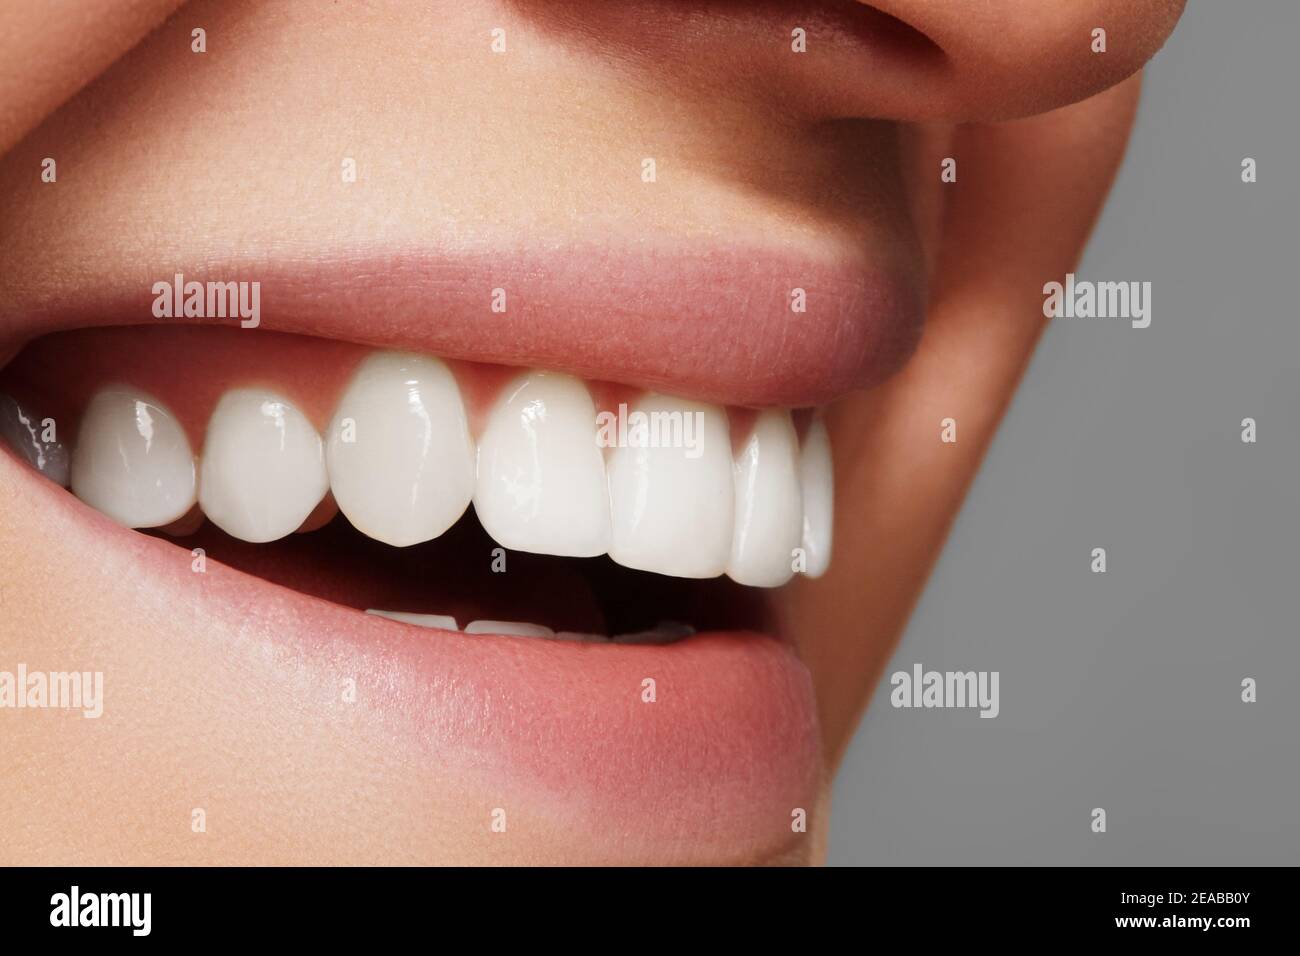 Un sourire éclatant et des dents plus blanches. Photo dentaire. Macro gros plan de la bouche parfaite de la femme, rouge à lèvres. Banque D'Images